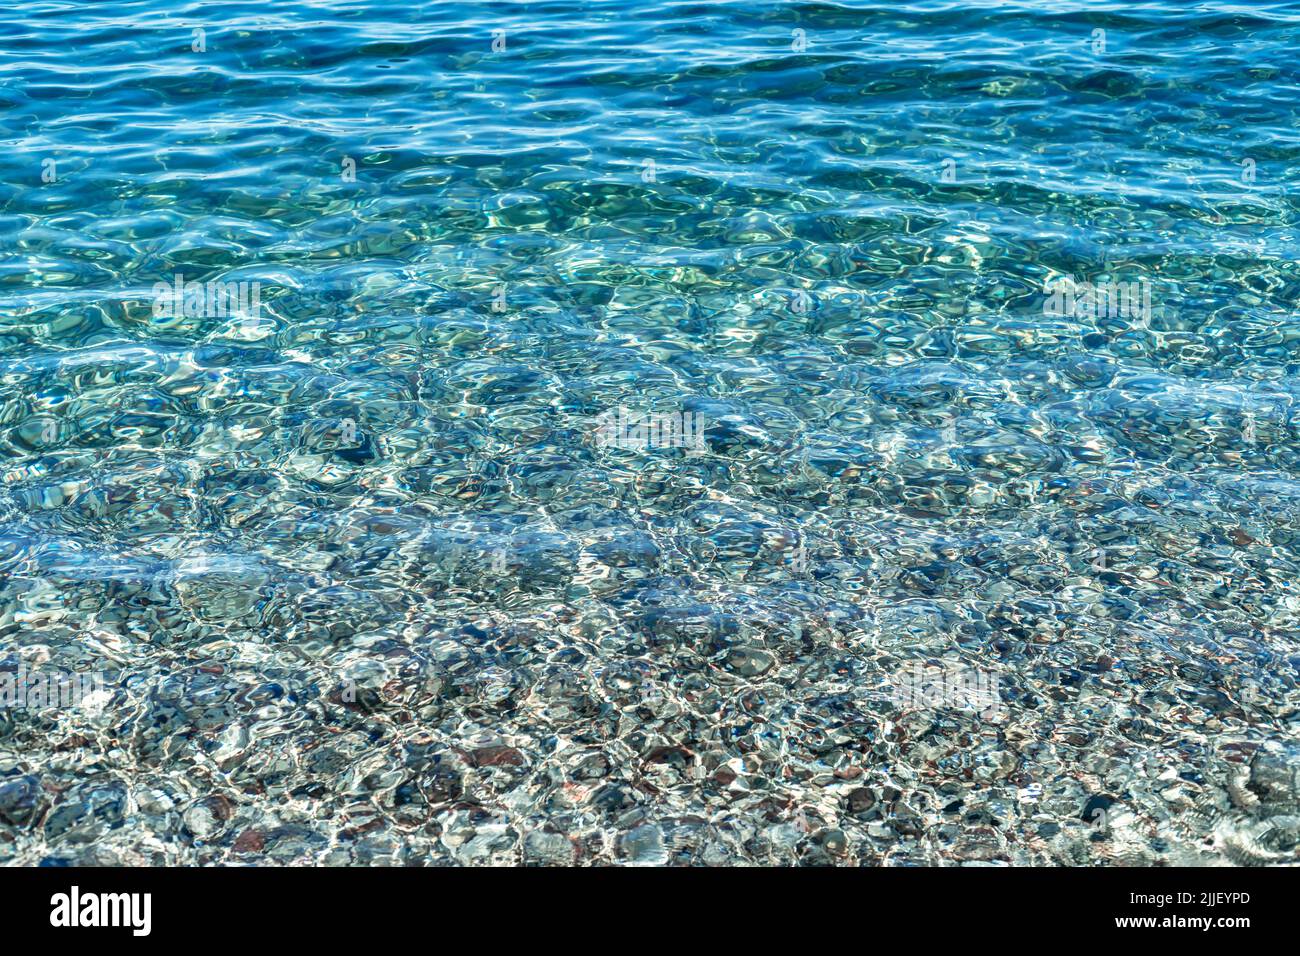 Nahaufnahme des kristallklaren Wassers des Olympos Strandes mit Kieselsteinen auf dem Boden in Antalya als Sommer, entspannen, ruhiger Hintergrund. Stockfoto